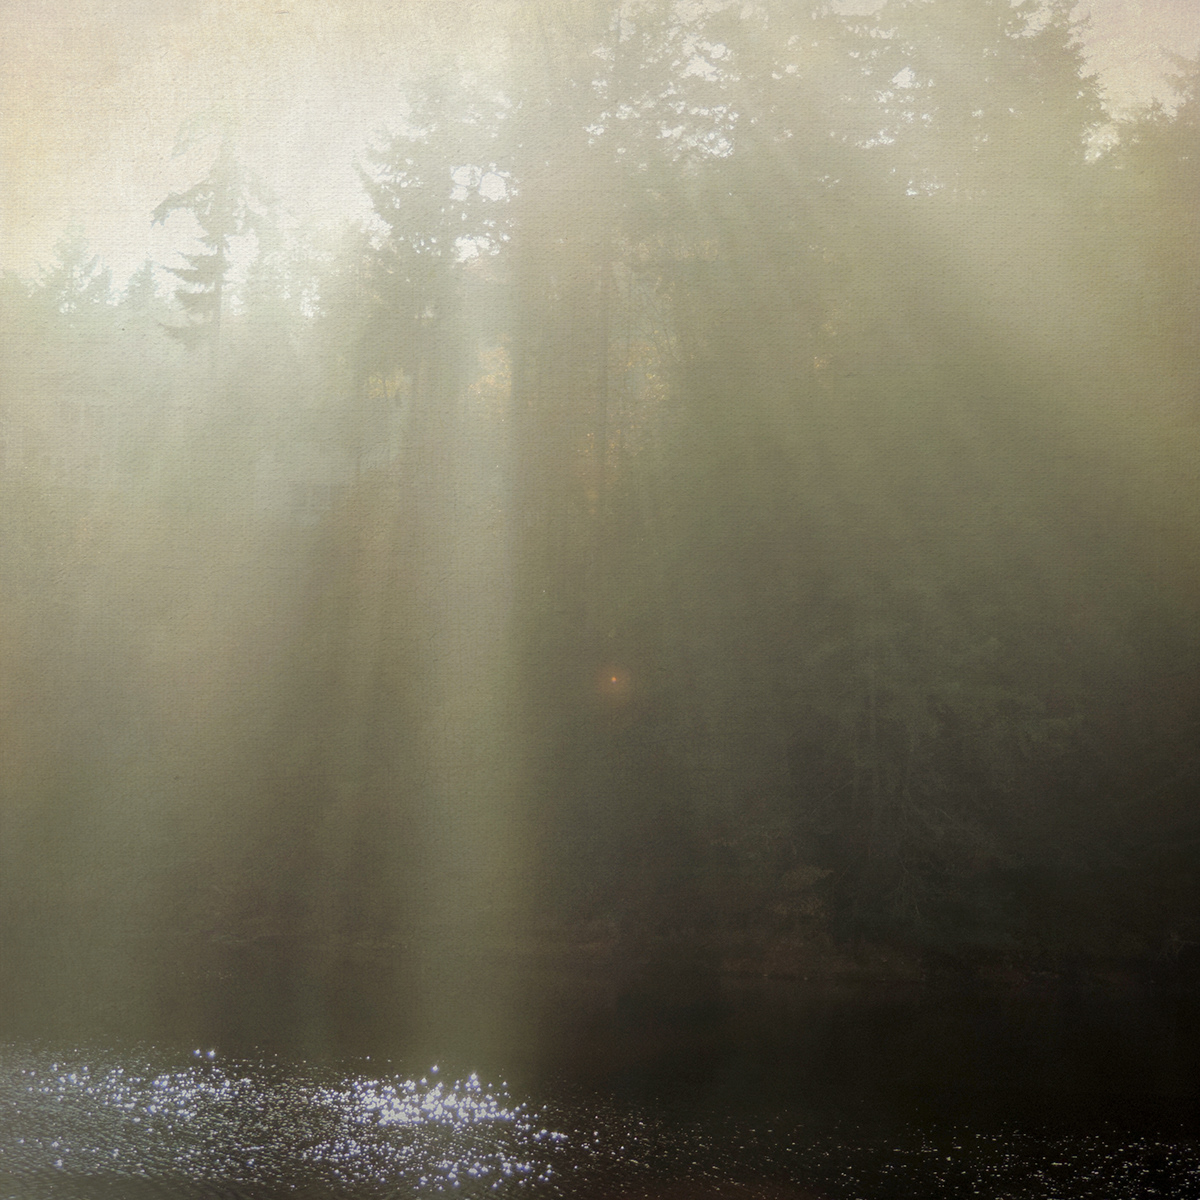 trees fog mist sun rays evergreens textured photos Sally Banfill